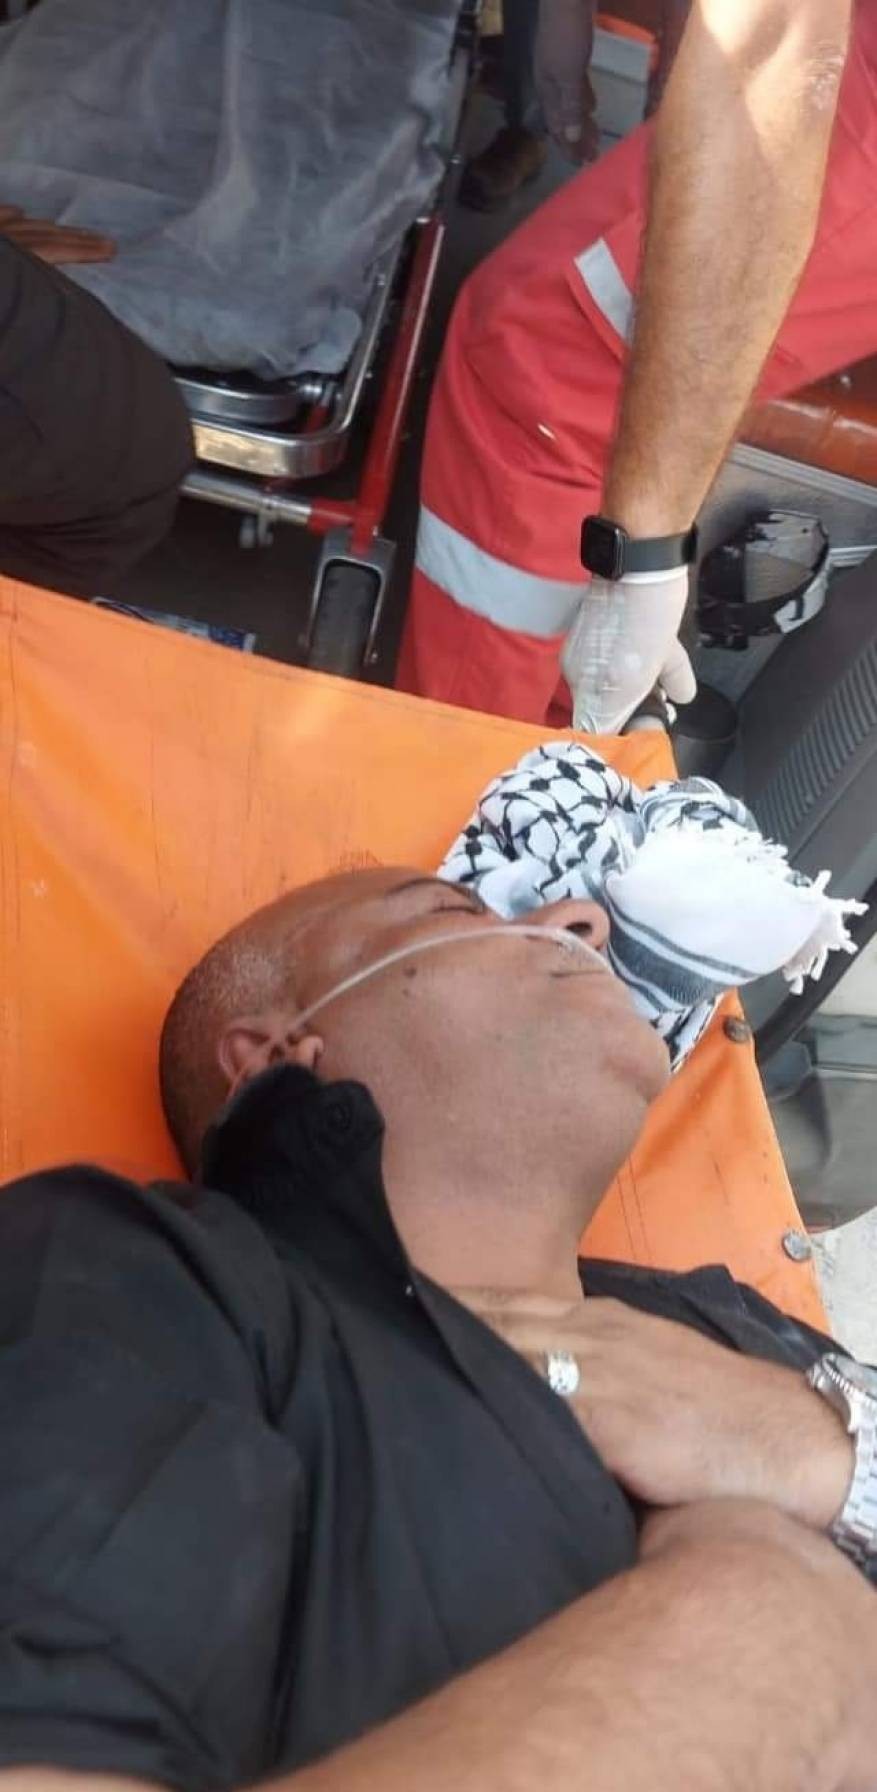 بالصور: إصابة الوزير مؤيد شعبان جراء اعتداء الاحتلال عليه في طولكرم